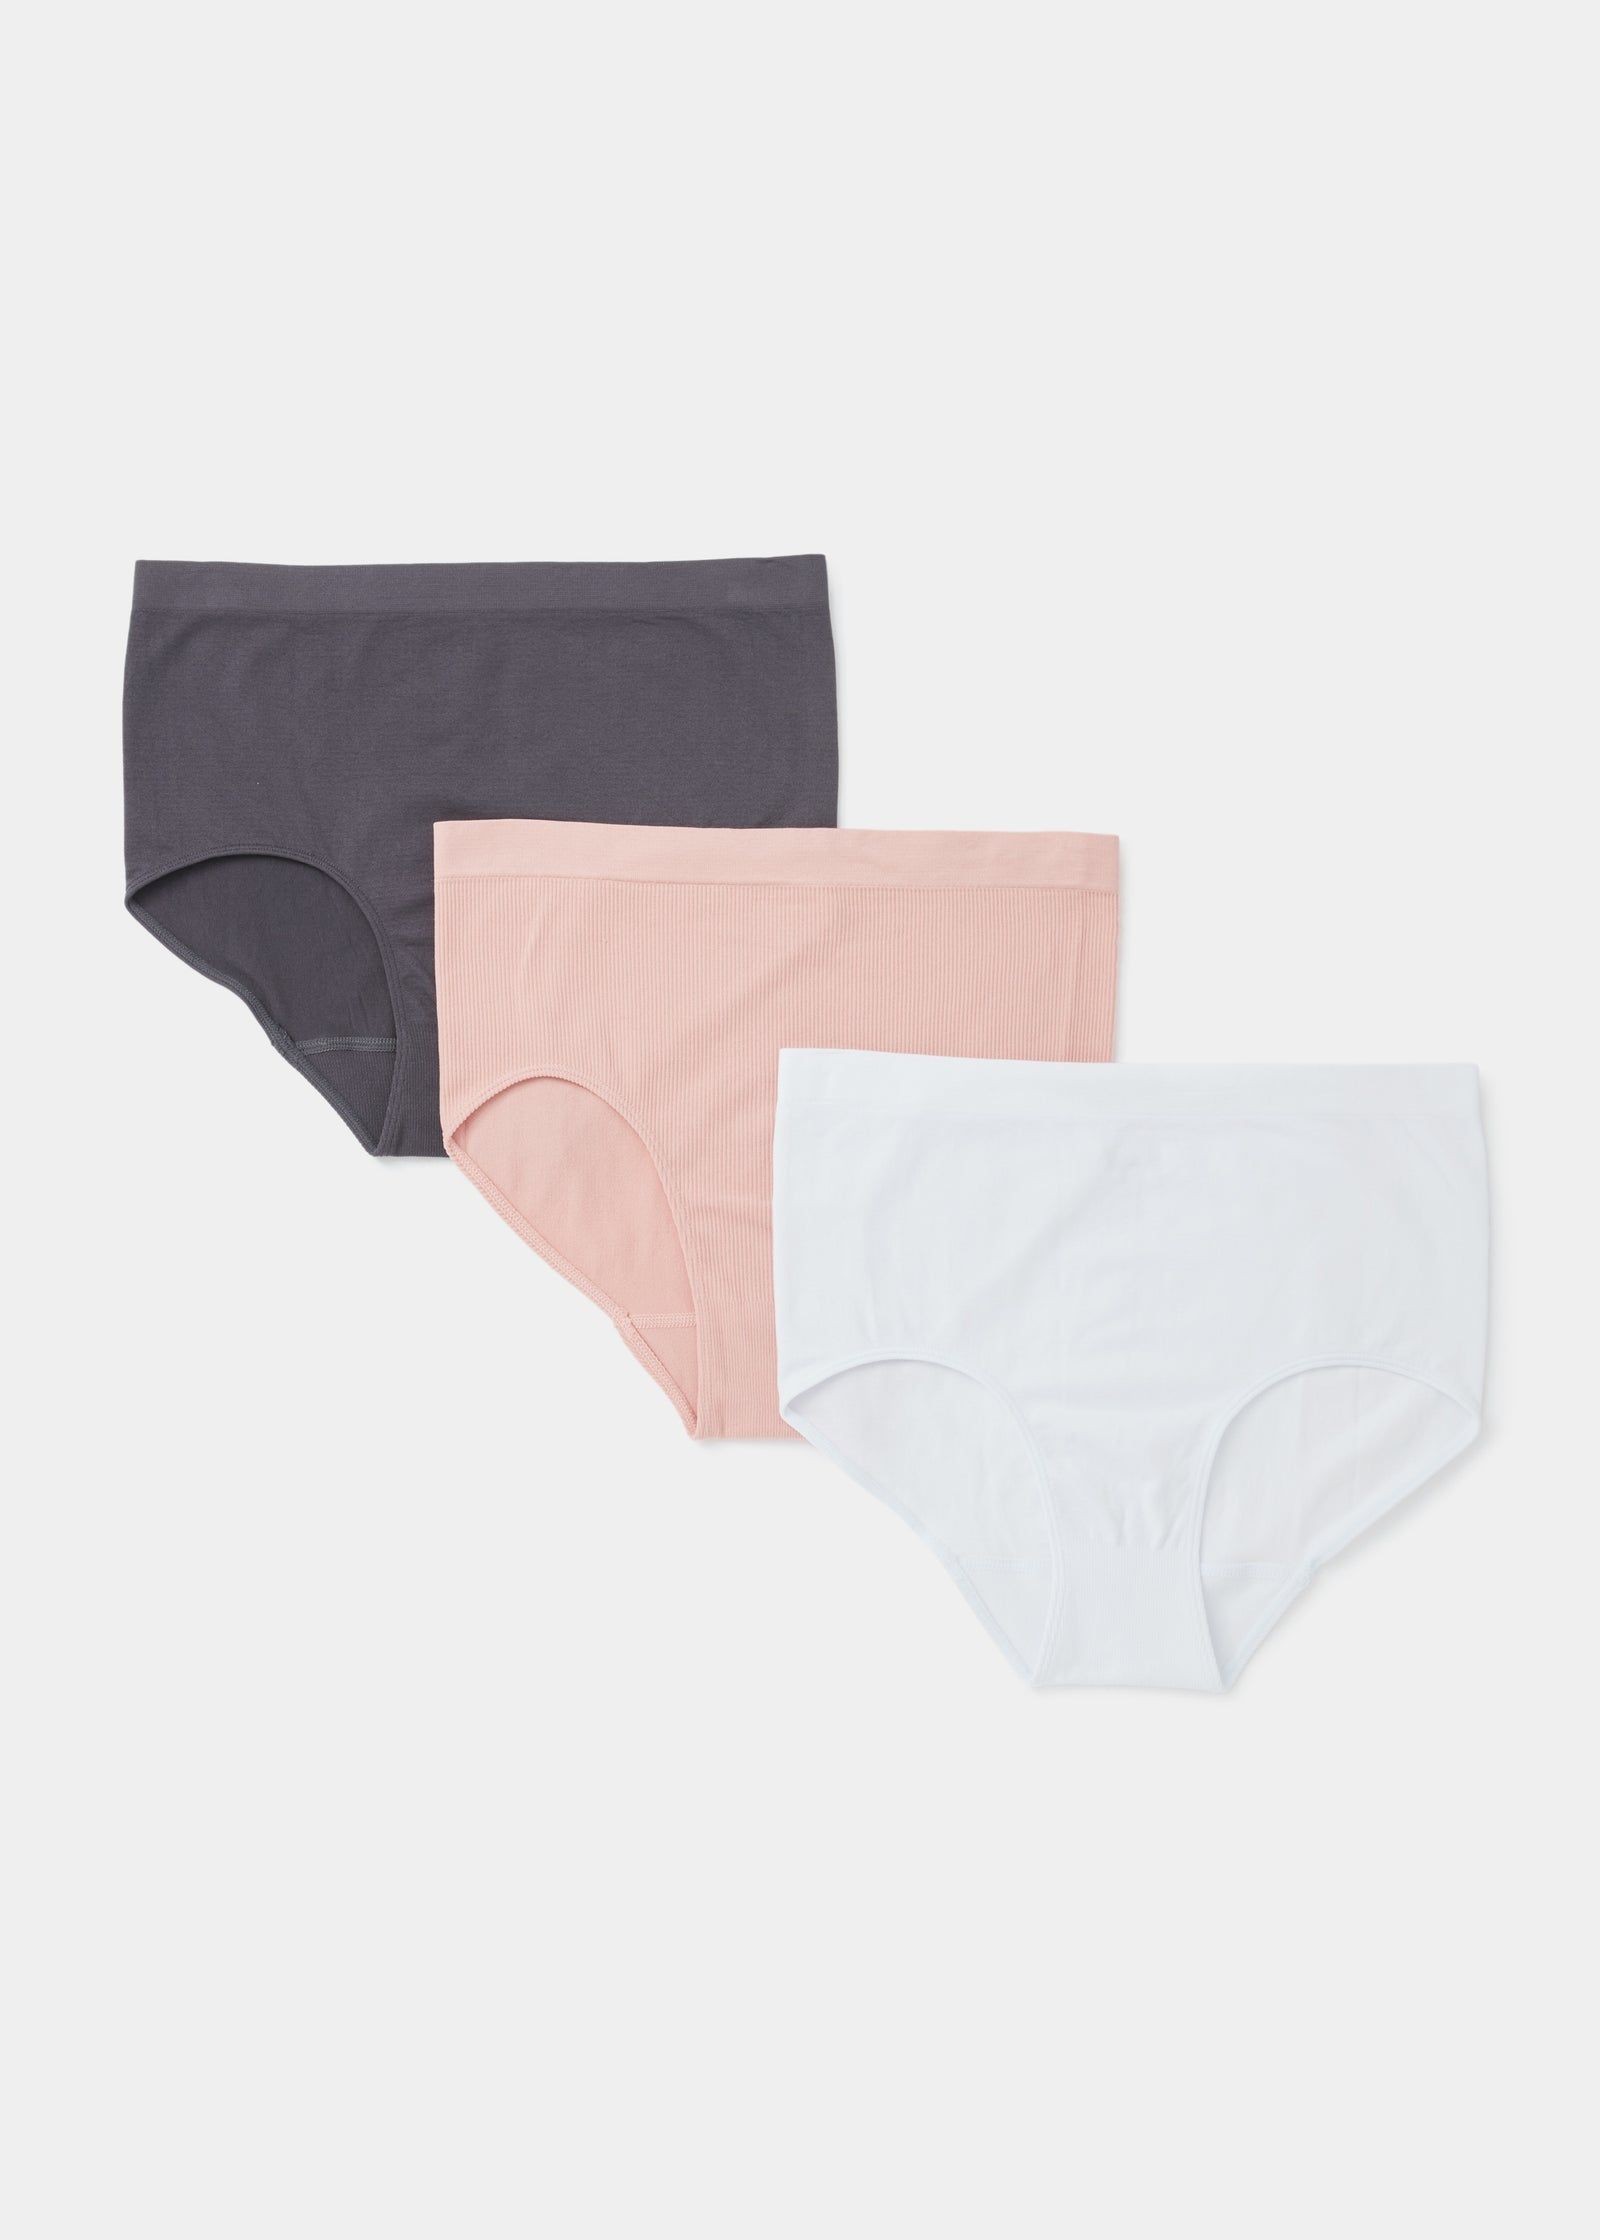 Seamfree Underwear (@seamfreeunderwear) • Instagram photos and videos